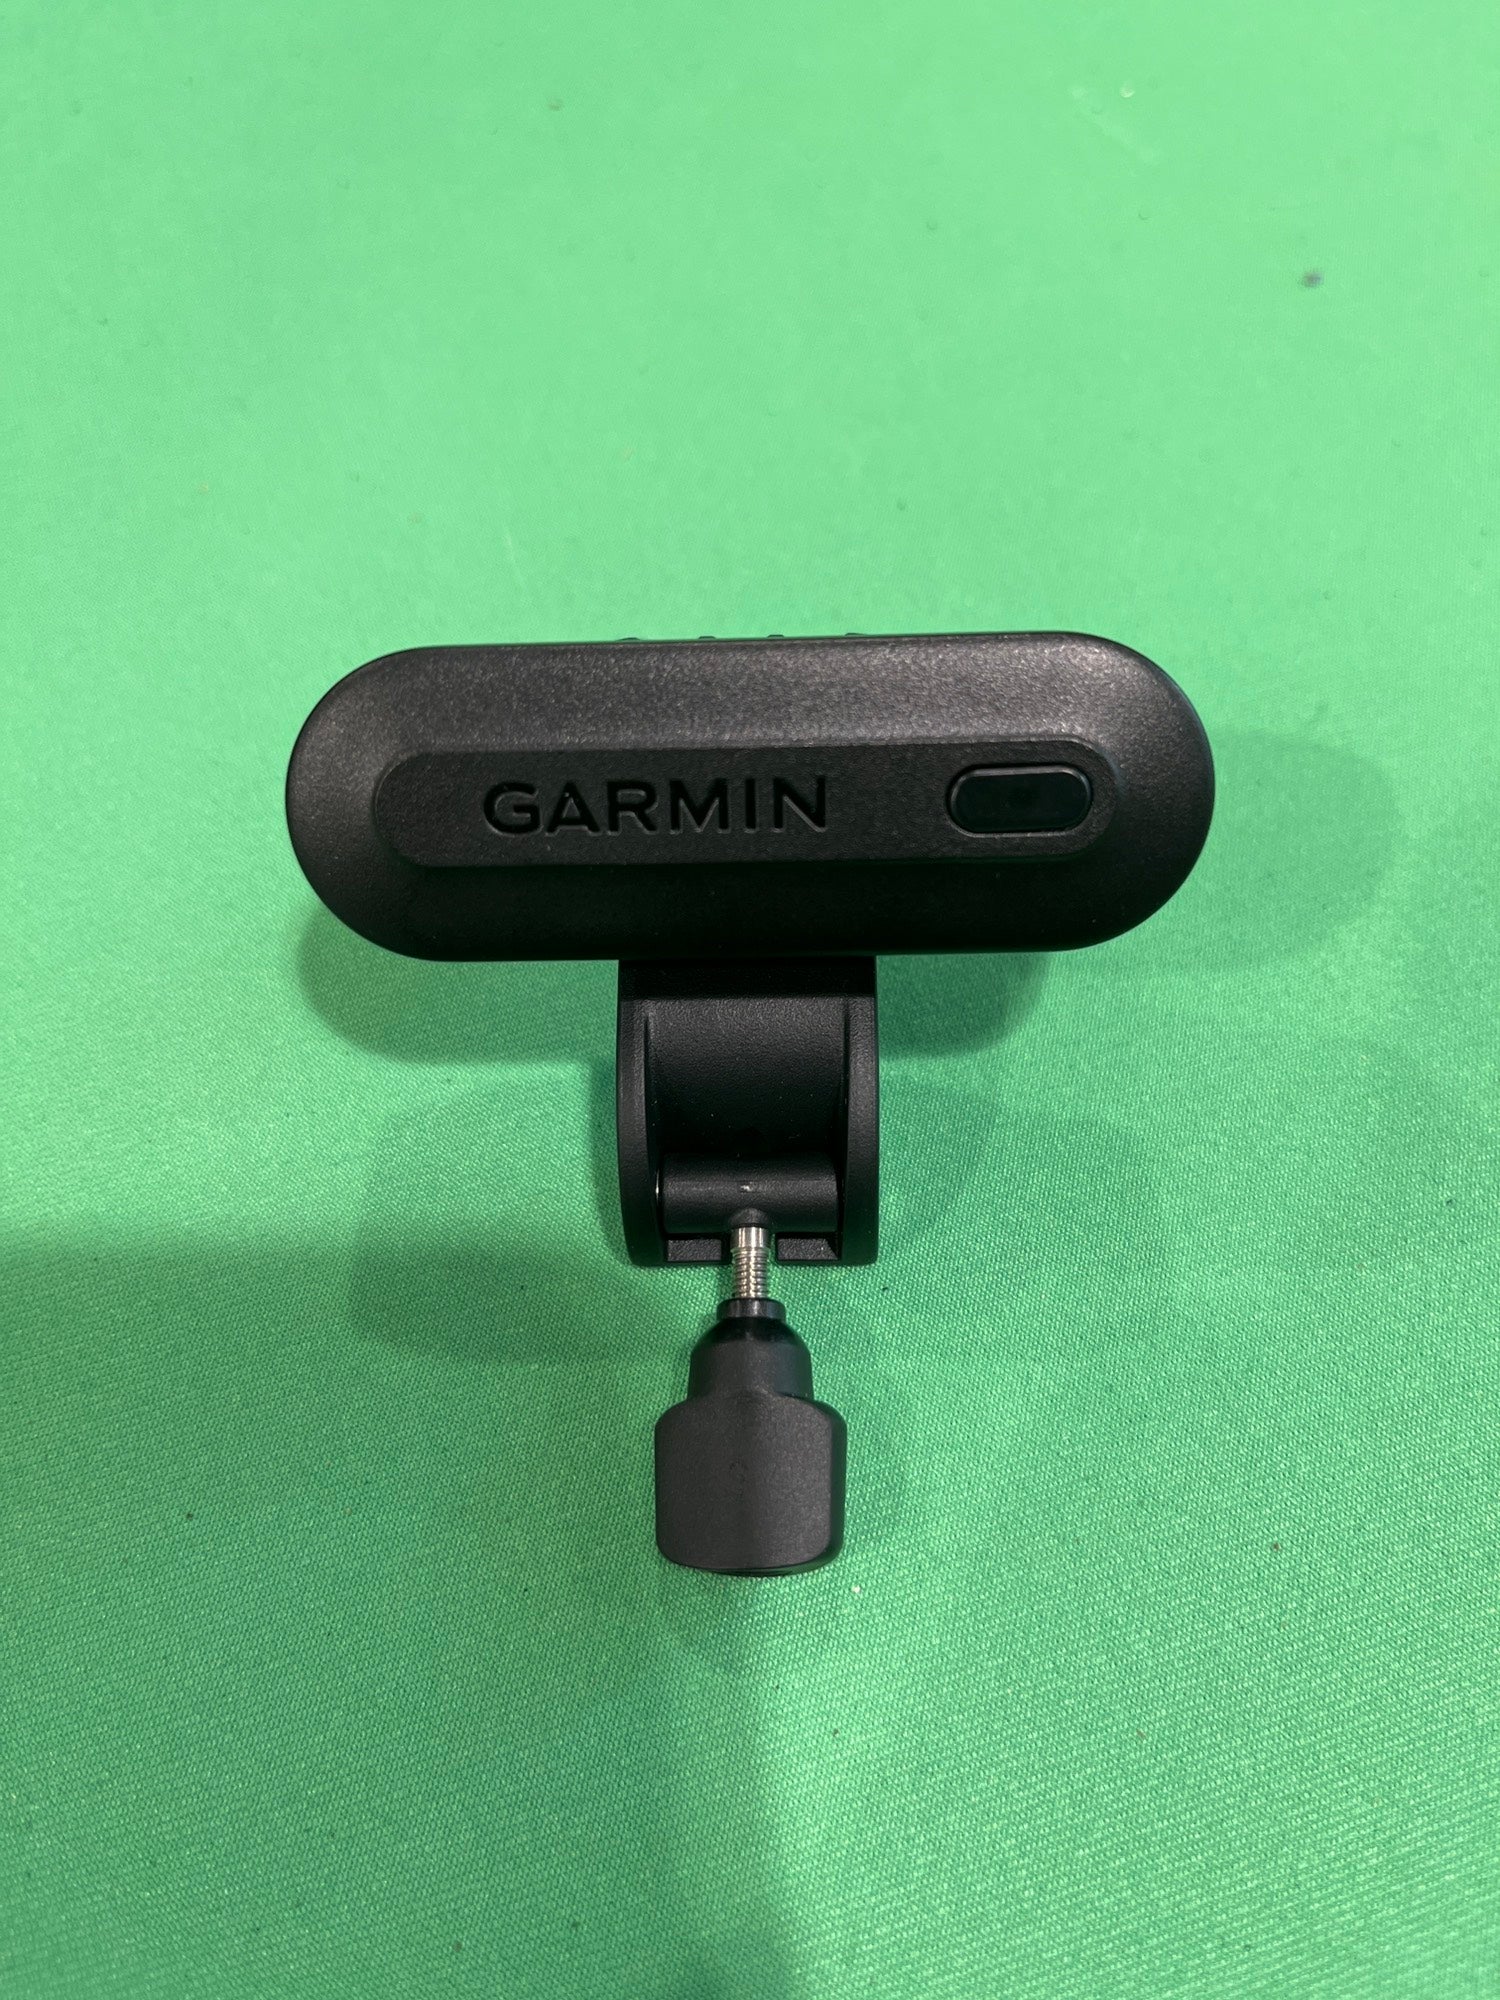 Used Garmin TruSwing Technology | SidelineSwap